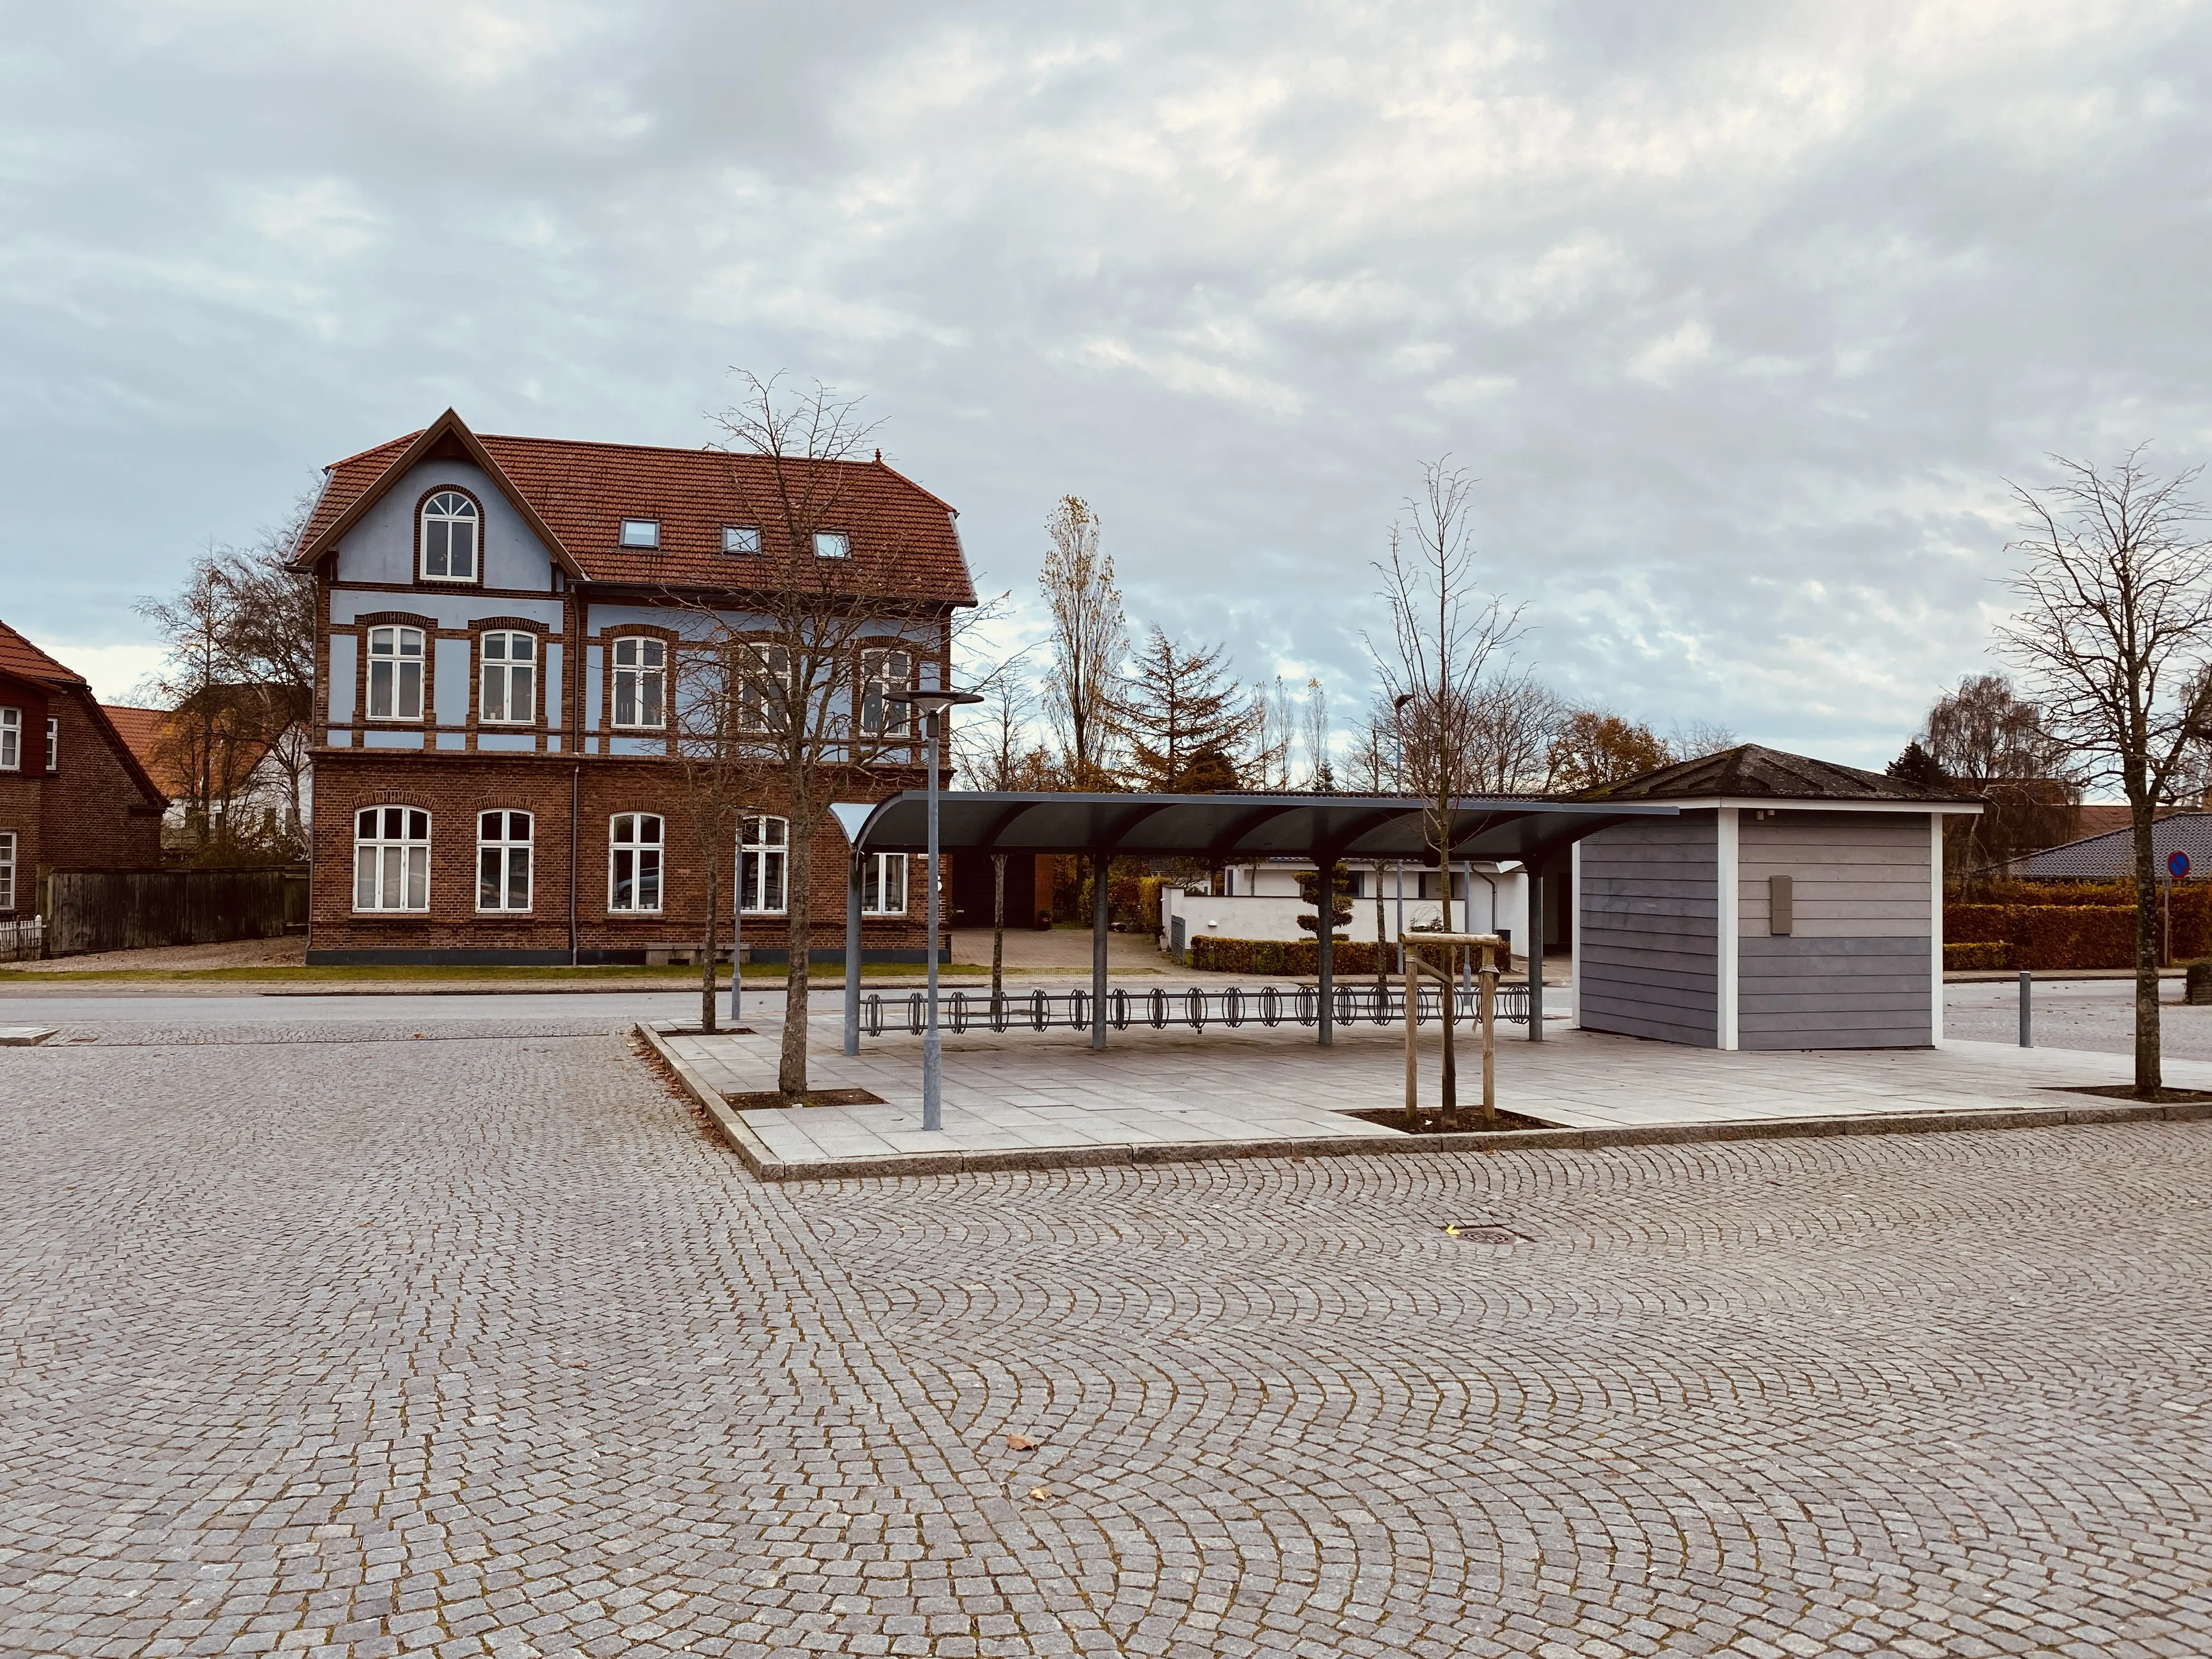 Billede af Toftlund Stations  posthus.